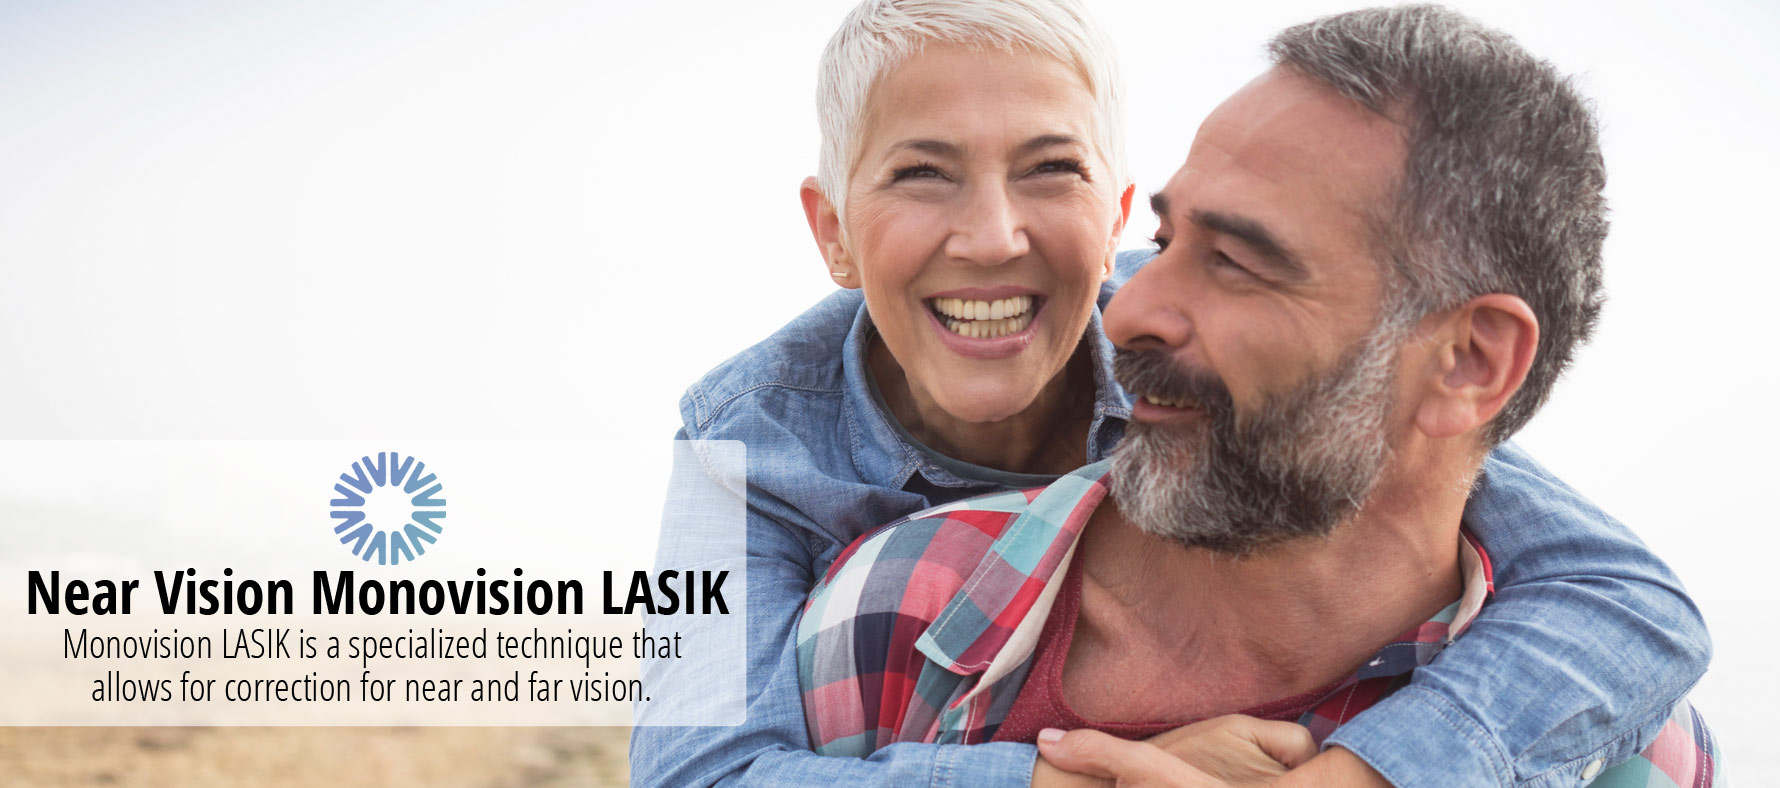 Near Vision Monovision LASIK Header Image